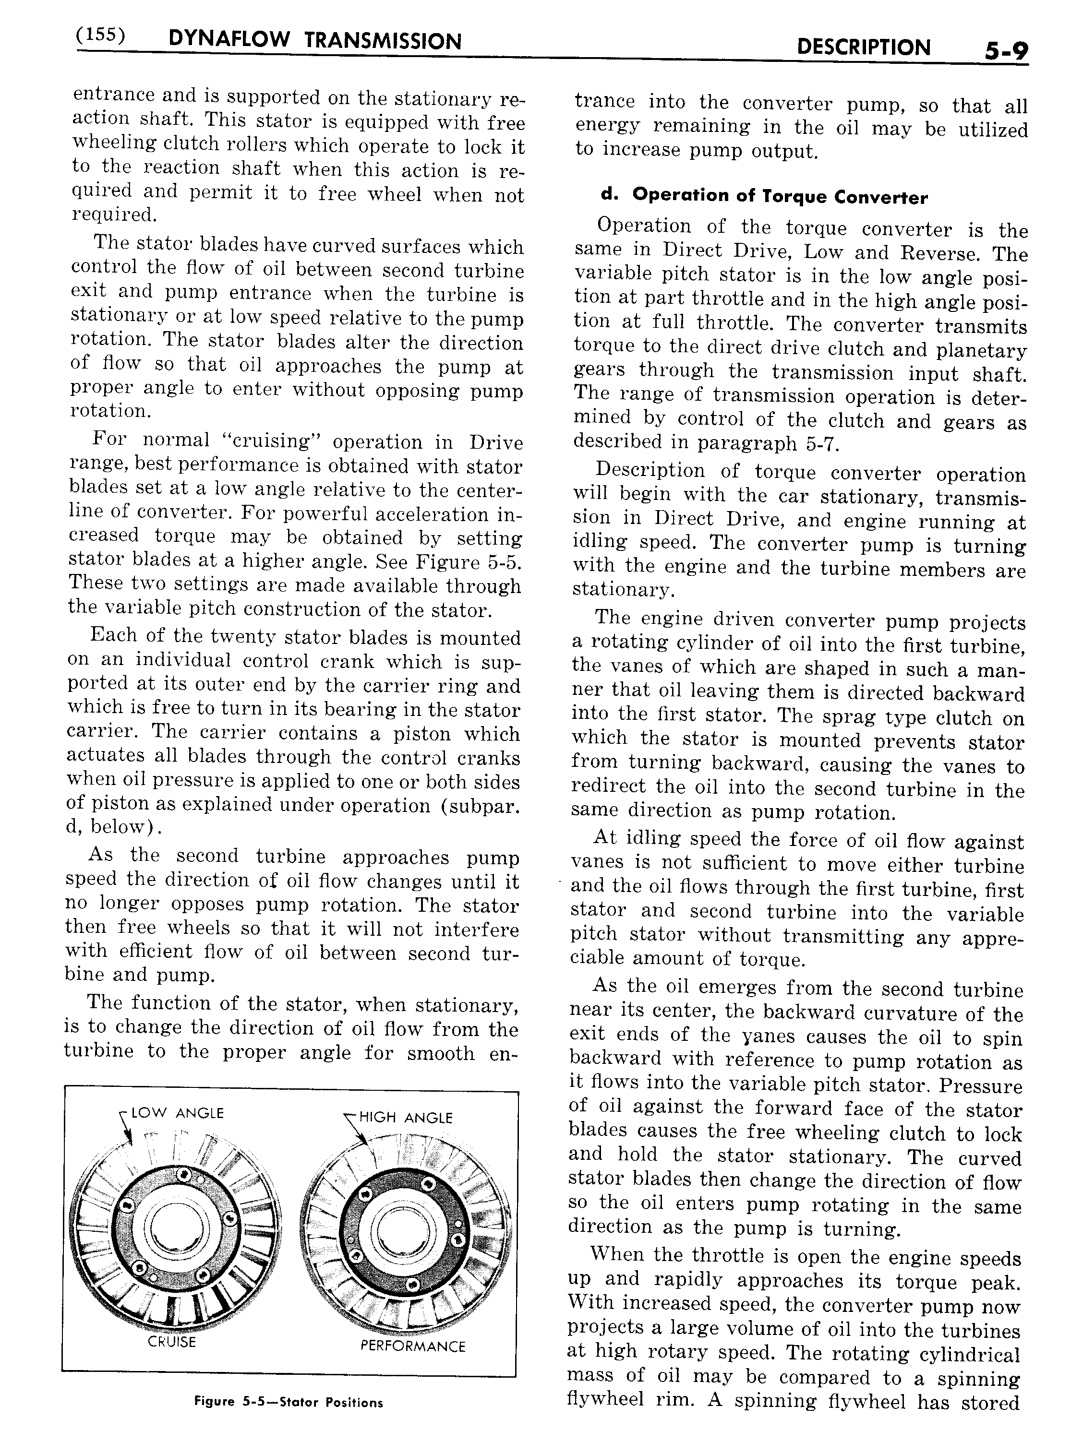 n_06 1956 Buick Shop Manual - Dynaflow-009-009.jpg